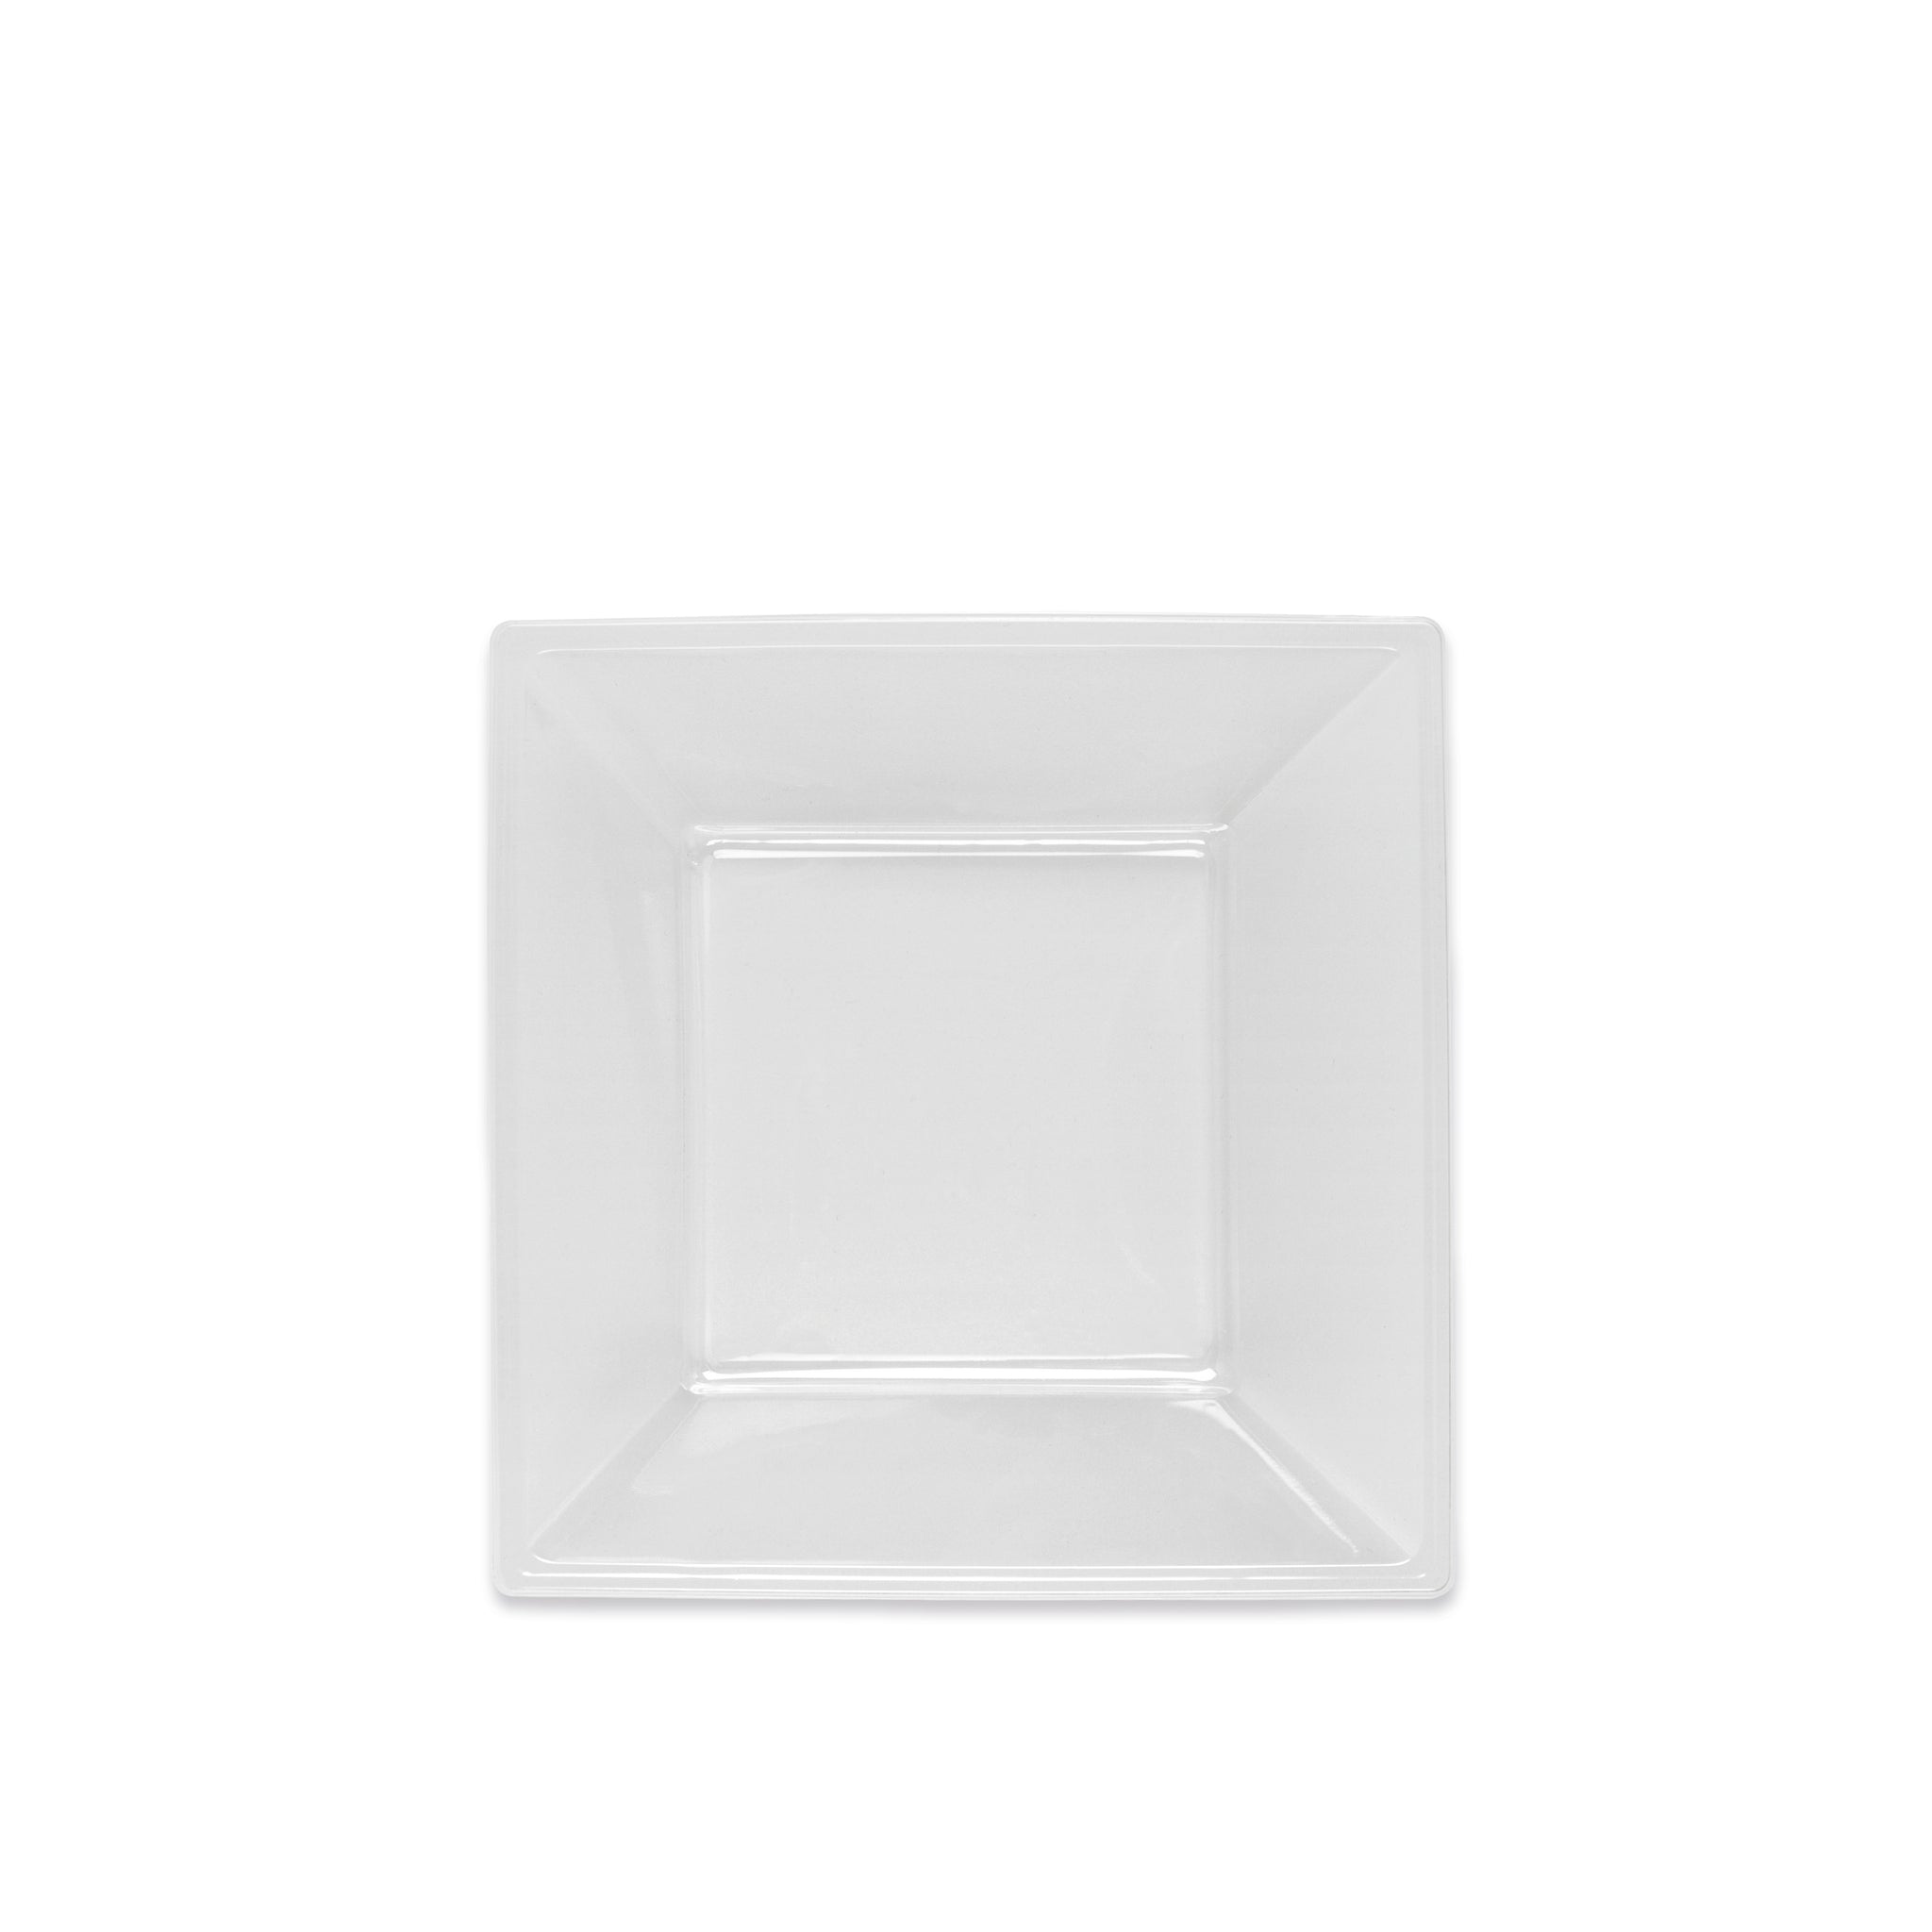 Prato de plástico quadrado 17 x 17 cm transparente